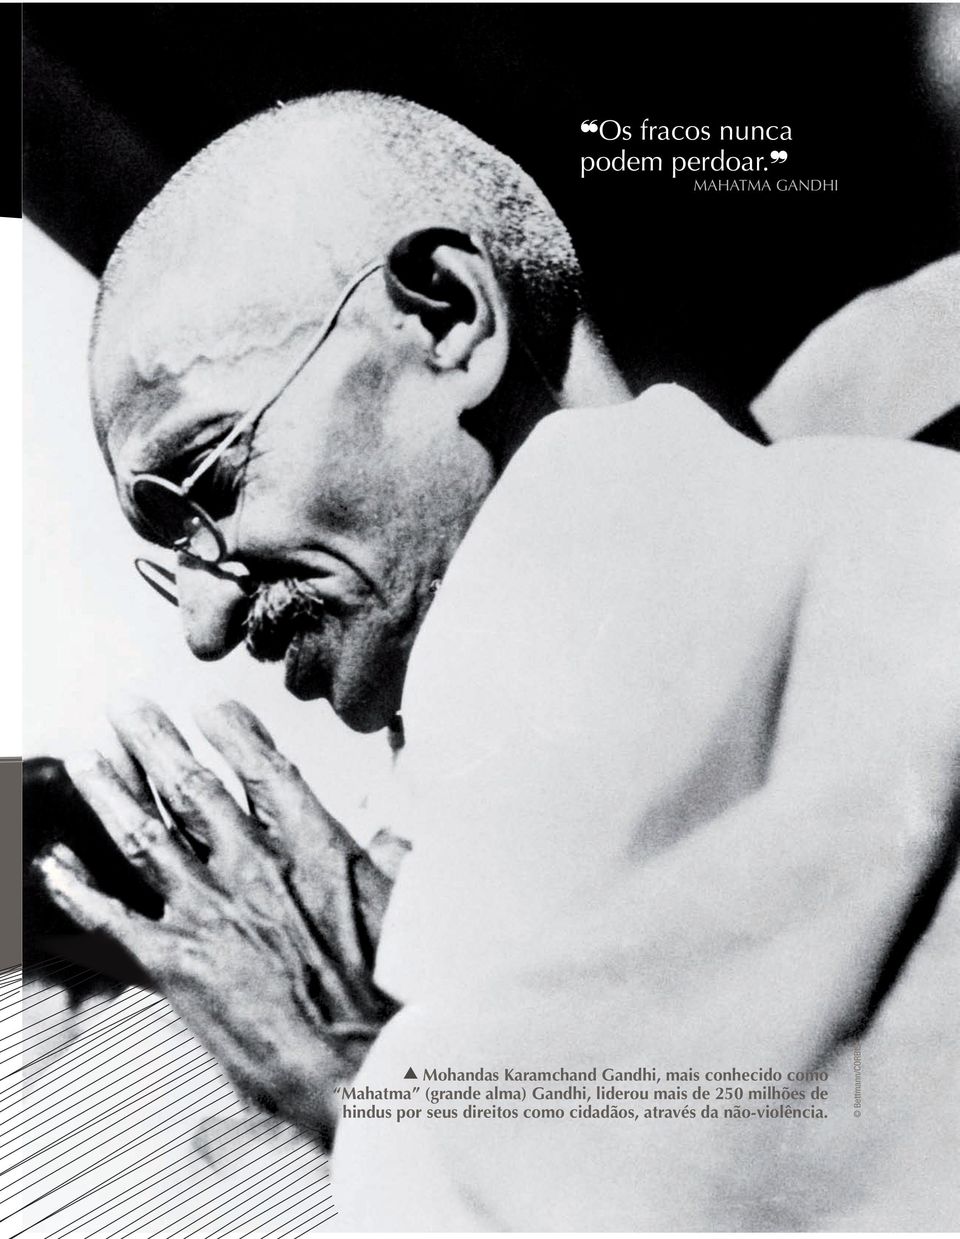 (grande alma) Gandhi, liderou mais de 250 milhões de hindus por seus